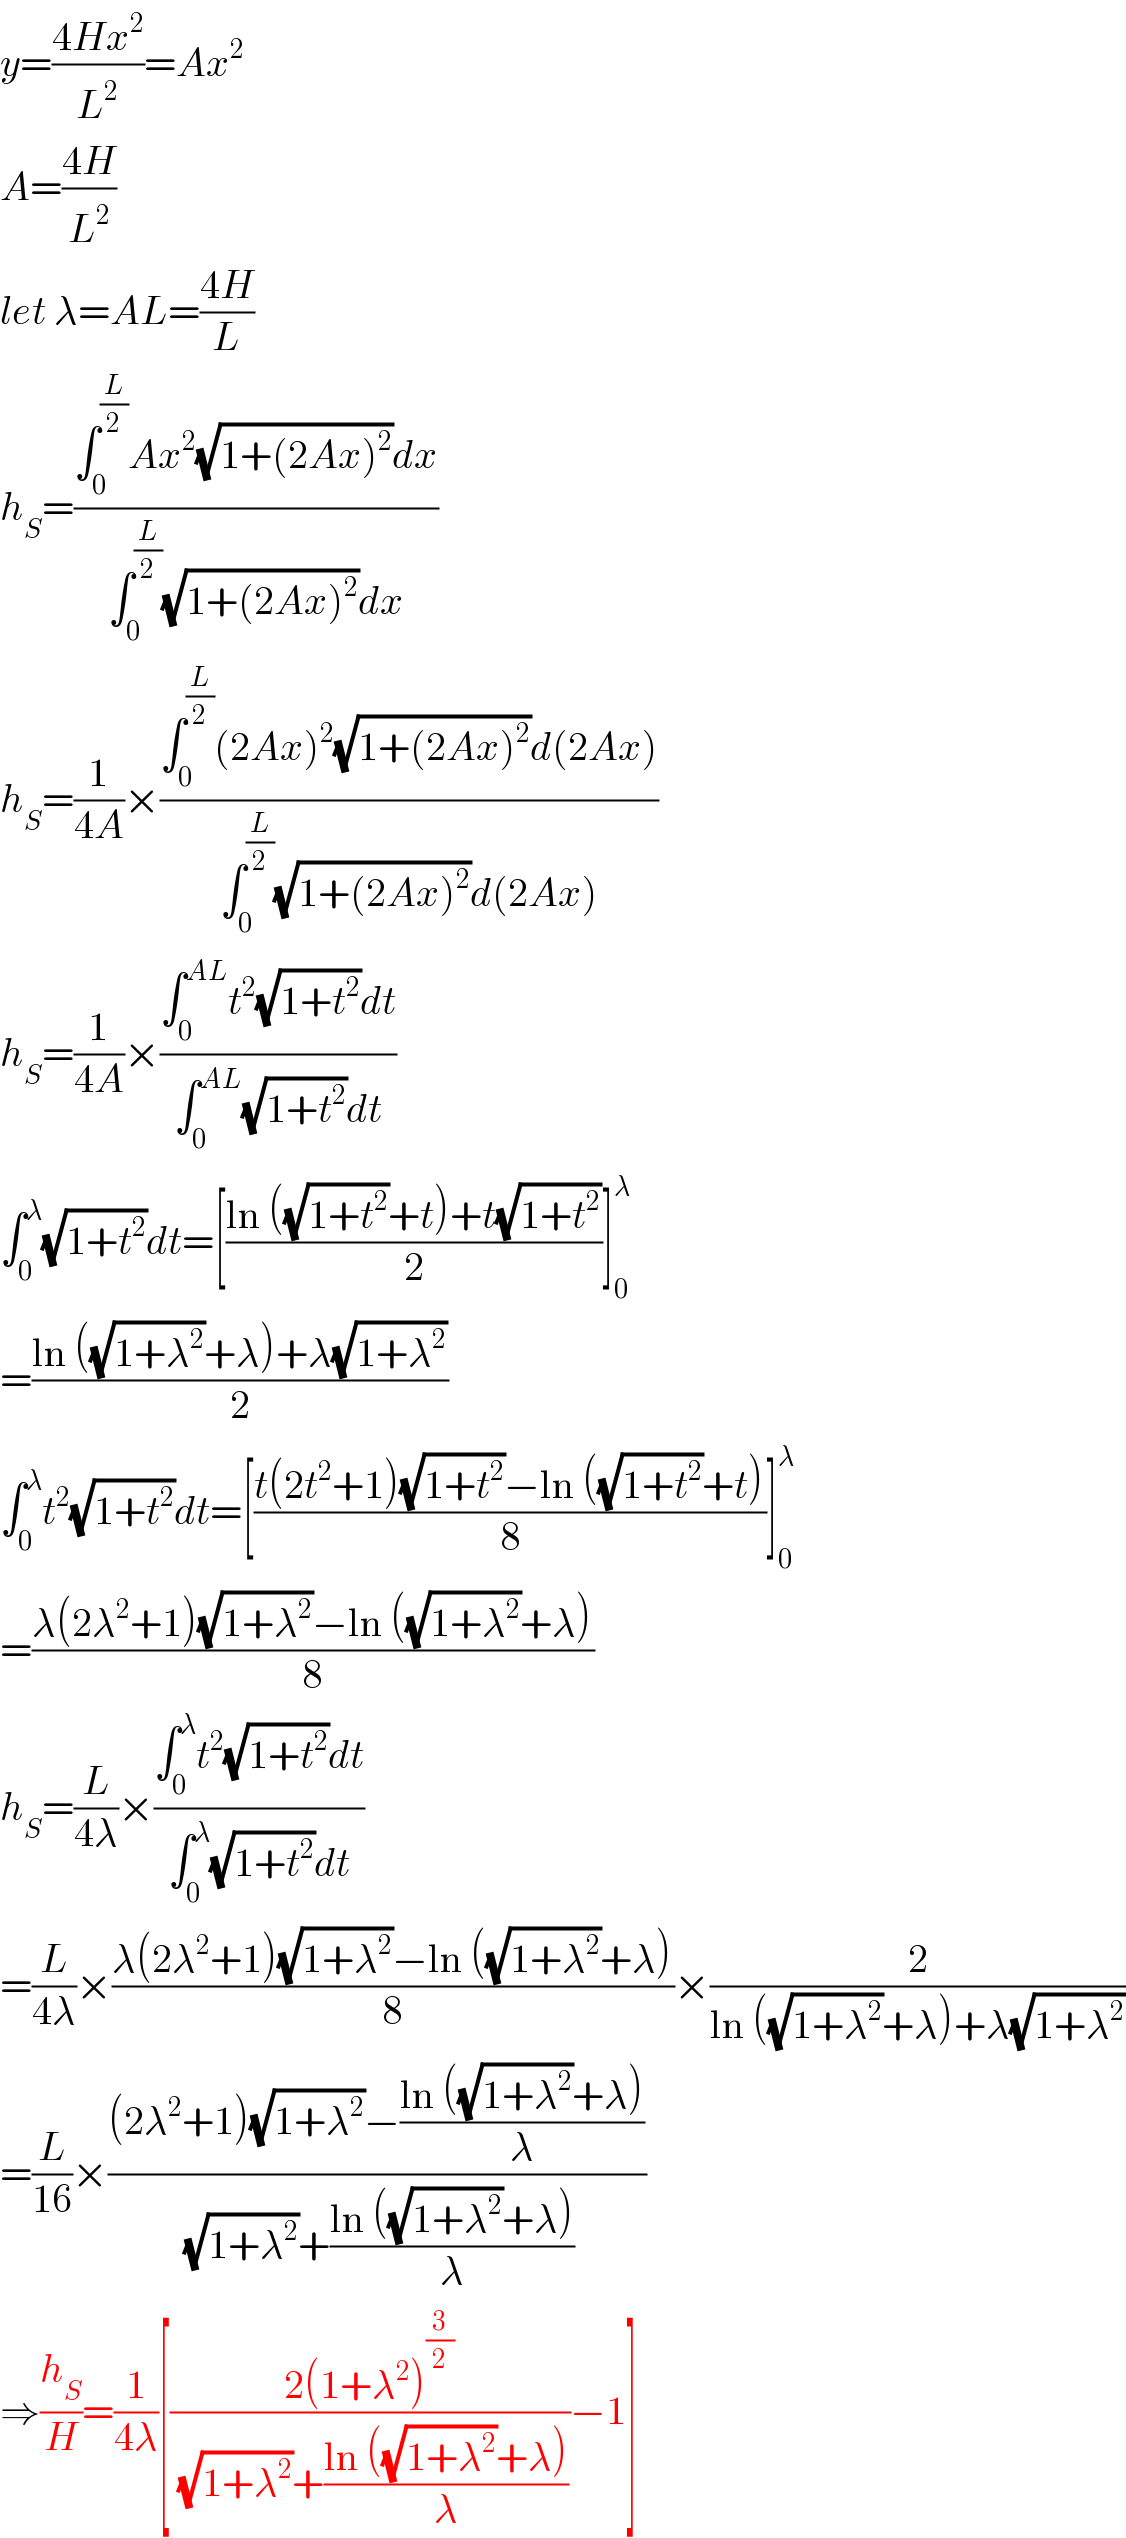 y=((4Hx^2 )/L^2 )=Ax^2   A=((4H)/L^2 )  let λ=AL=((4H)/L)  h_S =((∫_0 ^(L/2) Ax^2 (√(1+(2Ax)^2 ))dx)/(∫_0 ^(L/2) (√(1+(2Ax)^2 ))dx))  h_S =(1/(4A))×((∫_0 ^(L/2) (2Ax)^2 (√(1+(2Ax)^2 ))d(2Ax))/(∫_0 ^(L/2) (√(1+(2Ax)^2 ))d(2Ax)))  h_S =(1/(4A))×((∫_0 ^(AL) t^2 (√(1+t^2 ))dt)/(∫_0 ^(AL) (√(1+t^2 ))dt))  ∫_0 ^λ (√(1+t^2 ))dt=[((ln ((√(1+t^2 ))+t)+t(√(1+t^2 )))/2)]_0 ^λ   =((ln ((√(1+λ^2 ))+λ)+λ(√(1+λ^2 )))/2)  ∫_0 ^λ t^2 (√(1+t^2 ))dt=[((t(2t^2 +1)(√(1+t^2 ))−ln ((√(1+t^2 ))+t))/8)]_0 ^λ   =((λ(2λ^2 +1)(√(1+λ^2 ))−ln ((√(1+λ^2 ))+λ))/8)  h_S =(L/(4λ))×((∫_0 ^λ t^2 (√(1+t^2 ))dt)/(∫_0 ^λ (√(1+t^2 ))dt))  =(L/(4λ))×((λ(2λ^2 +1)(√(1+λ^2 ))−ln ((√(1+λ^2 ))+λ))/8)×(2/(ln ((√(1+λ^2 ))+λ)+λ(√(1+λ^2 ))))  =(L/(16))×(((2λ^2 +1)(√(1+λ^2 ))−((ln ((√(1+λ^2 ))+λ))/λ))/((√(1+λ^2 ))+((ln ((√(1+λ^2 ))+λ))/λ)))  ⇒(h_S /H)=(1/(4λ))[((2(1+λ^2 )^(3/2) )/((√(1+λ^2 ))+((ln ((√(1+λ^2 ))+λ))/λ)))−1]  